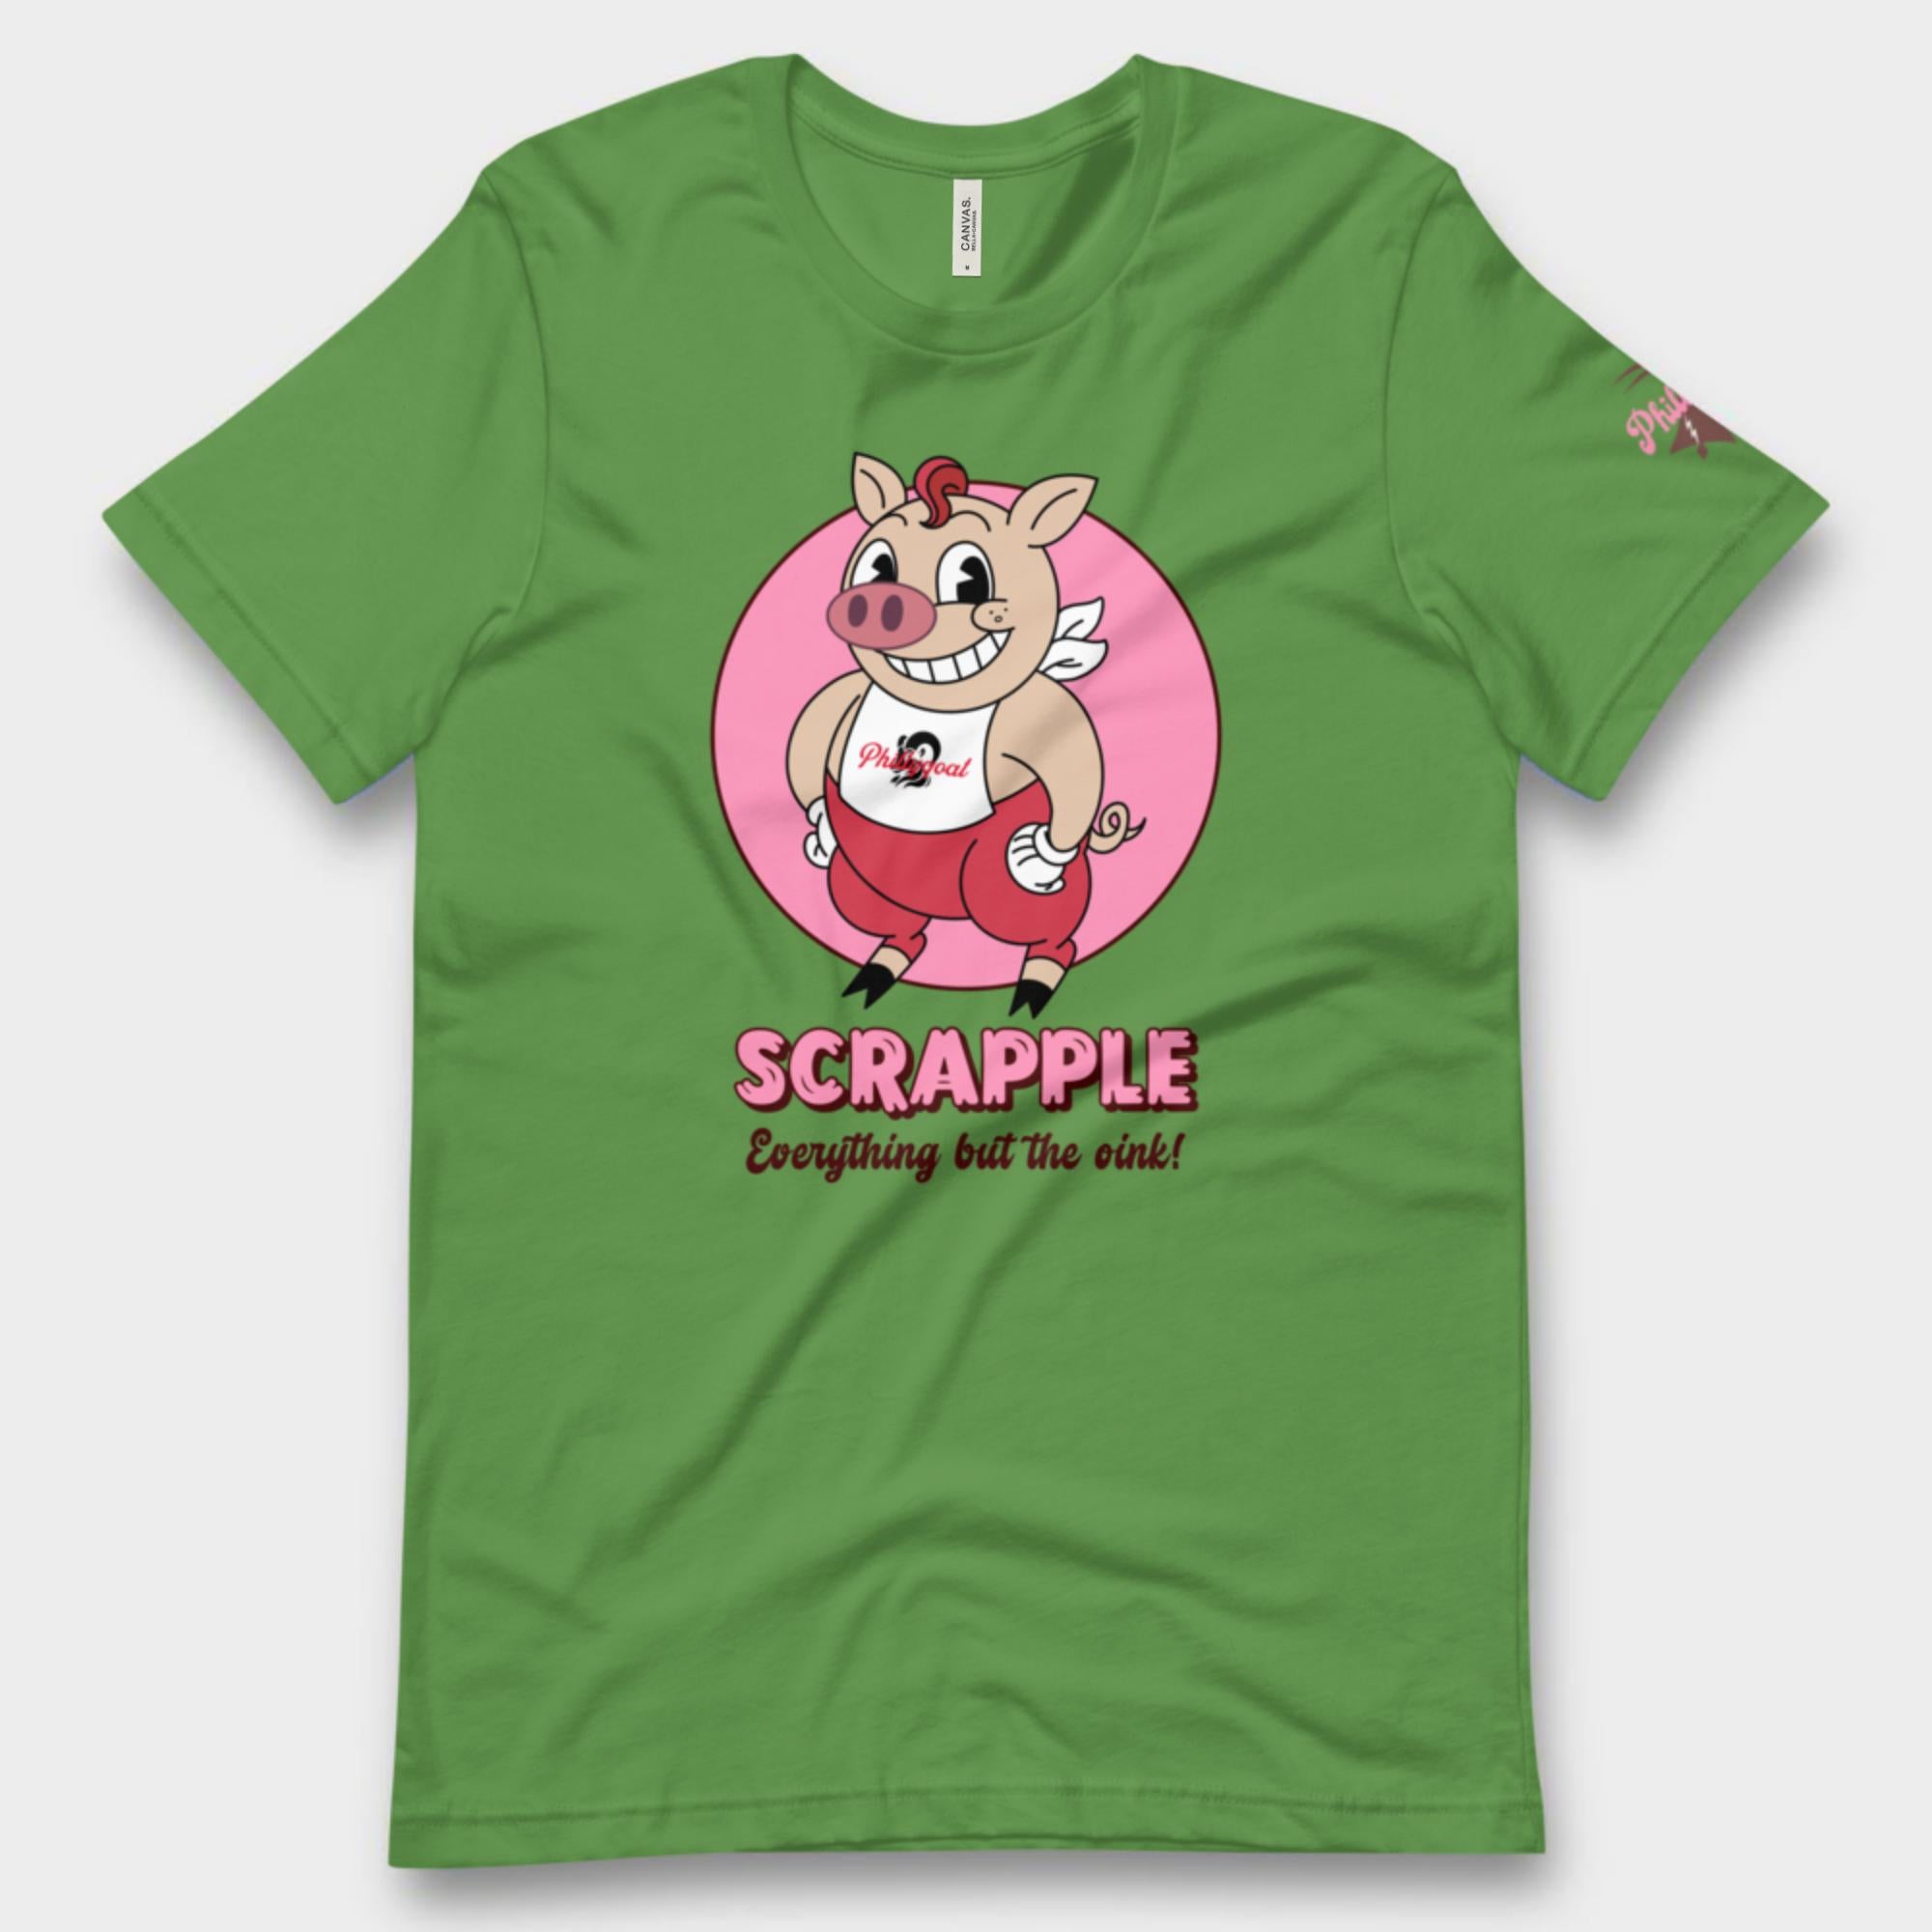 "Scrapple" Tee